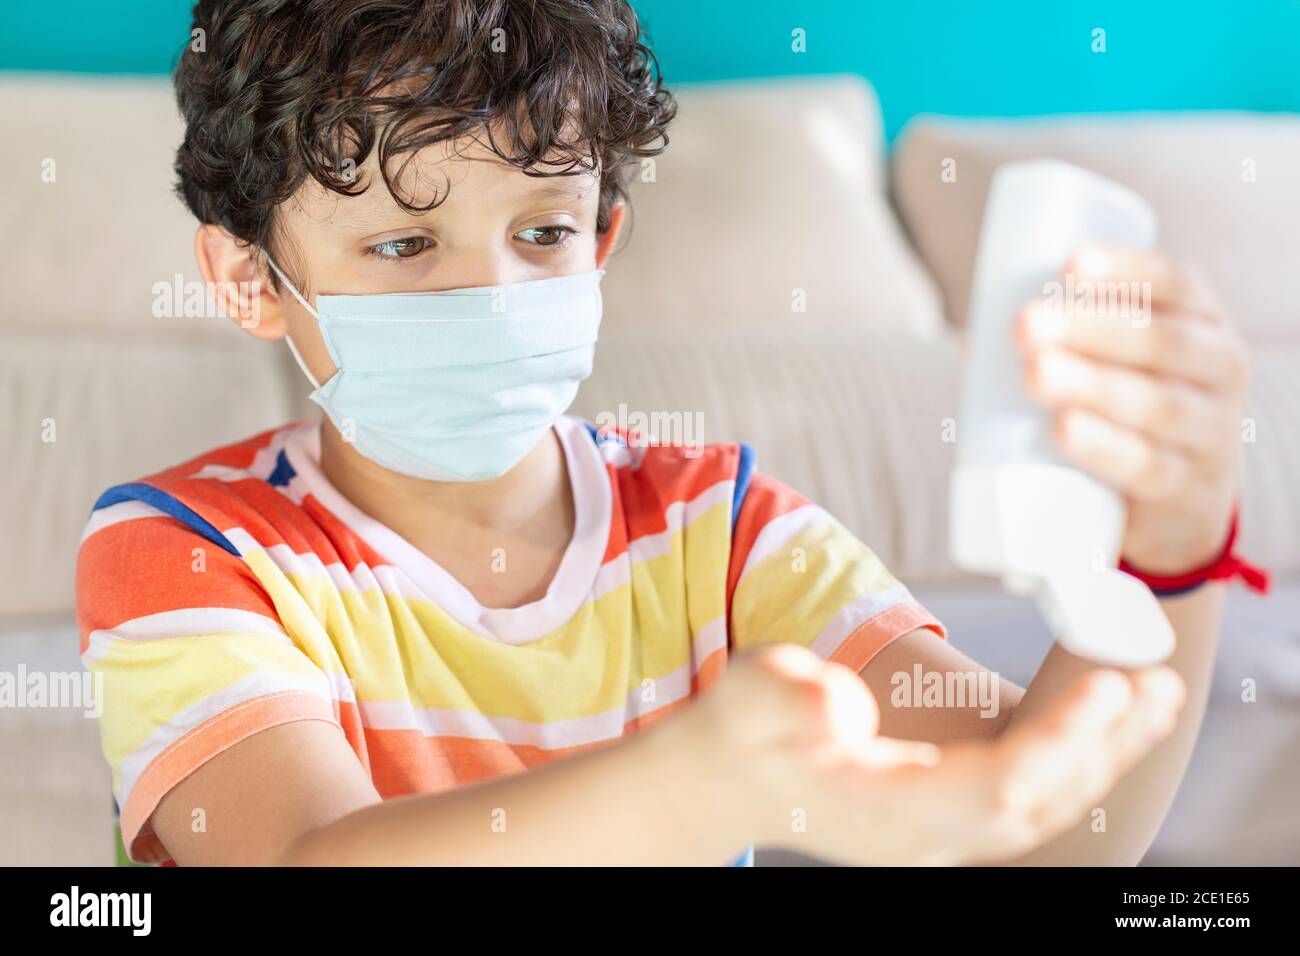 Petit garçon avec un masque facial appliquant du gel hydroalcoolique sur Ses mains comme mesure préventive pendant la pandémie de Covid-19 Banque D'Images